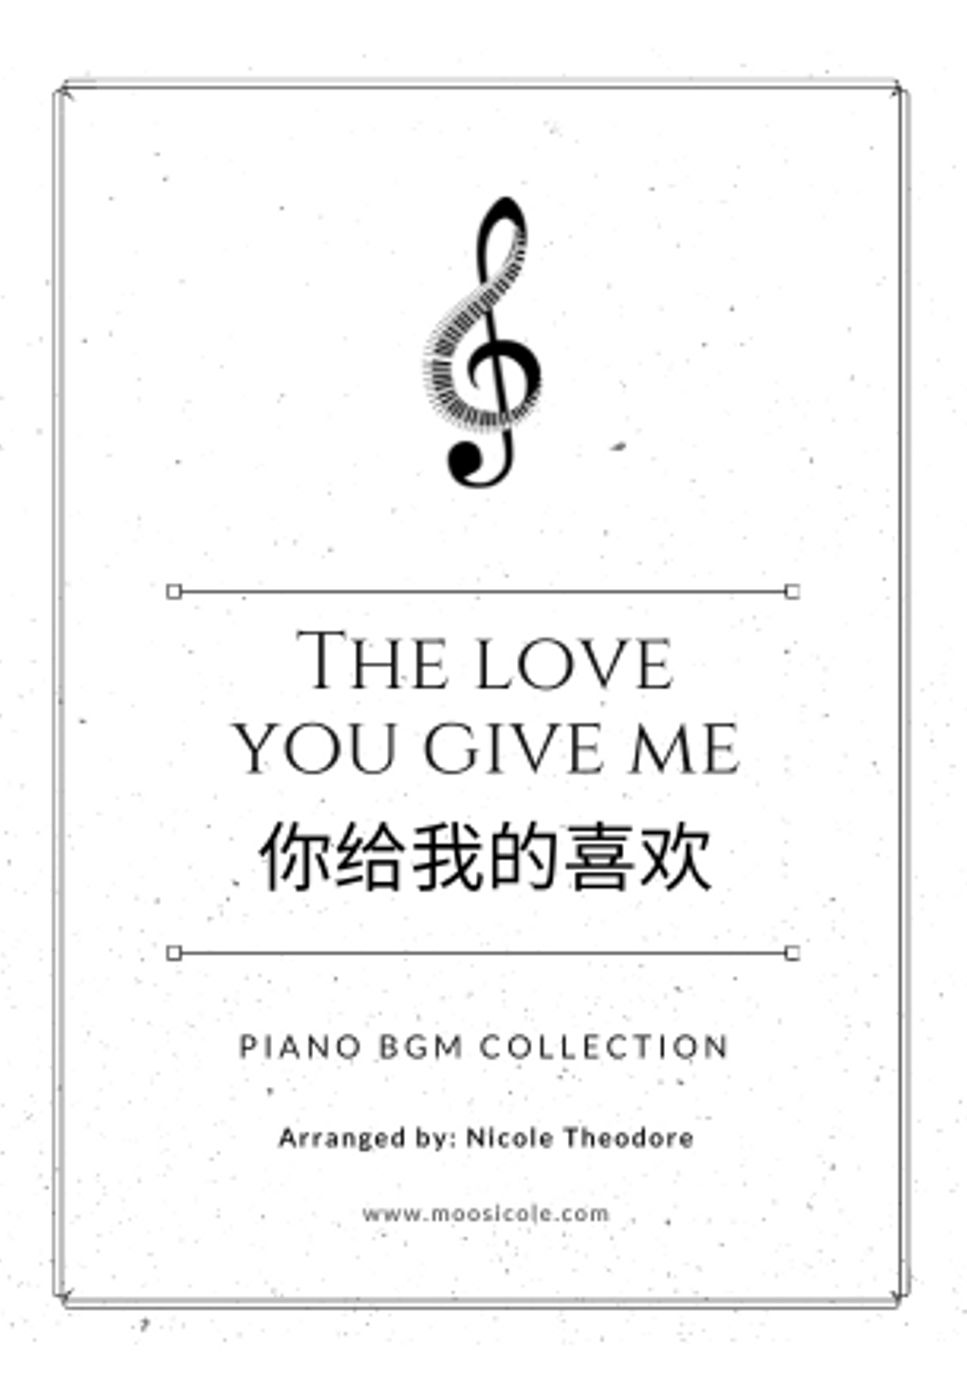 黄宇弘 - The Love You Give Me Piano BGM Album by Nicole Theodore